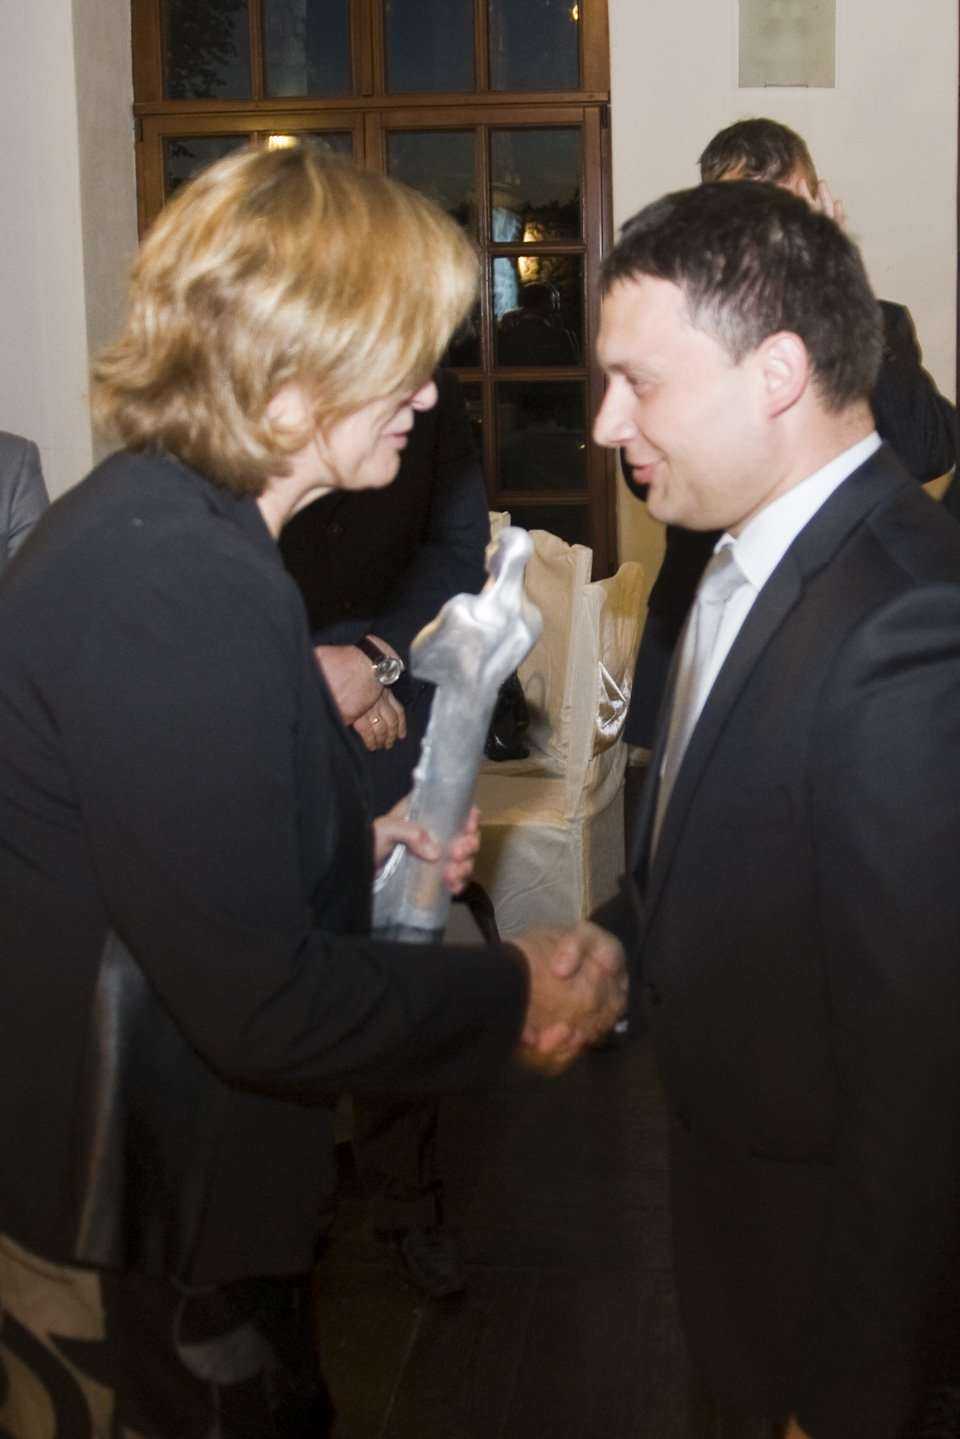 Tomasz Daniłoś prezes firmy INFRA SA odbiera nagrodę TYTAN 2010 z rąk Professor Marii Anny Polak Ph.D.P. Eng., University of Waterloo